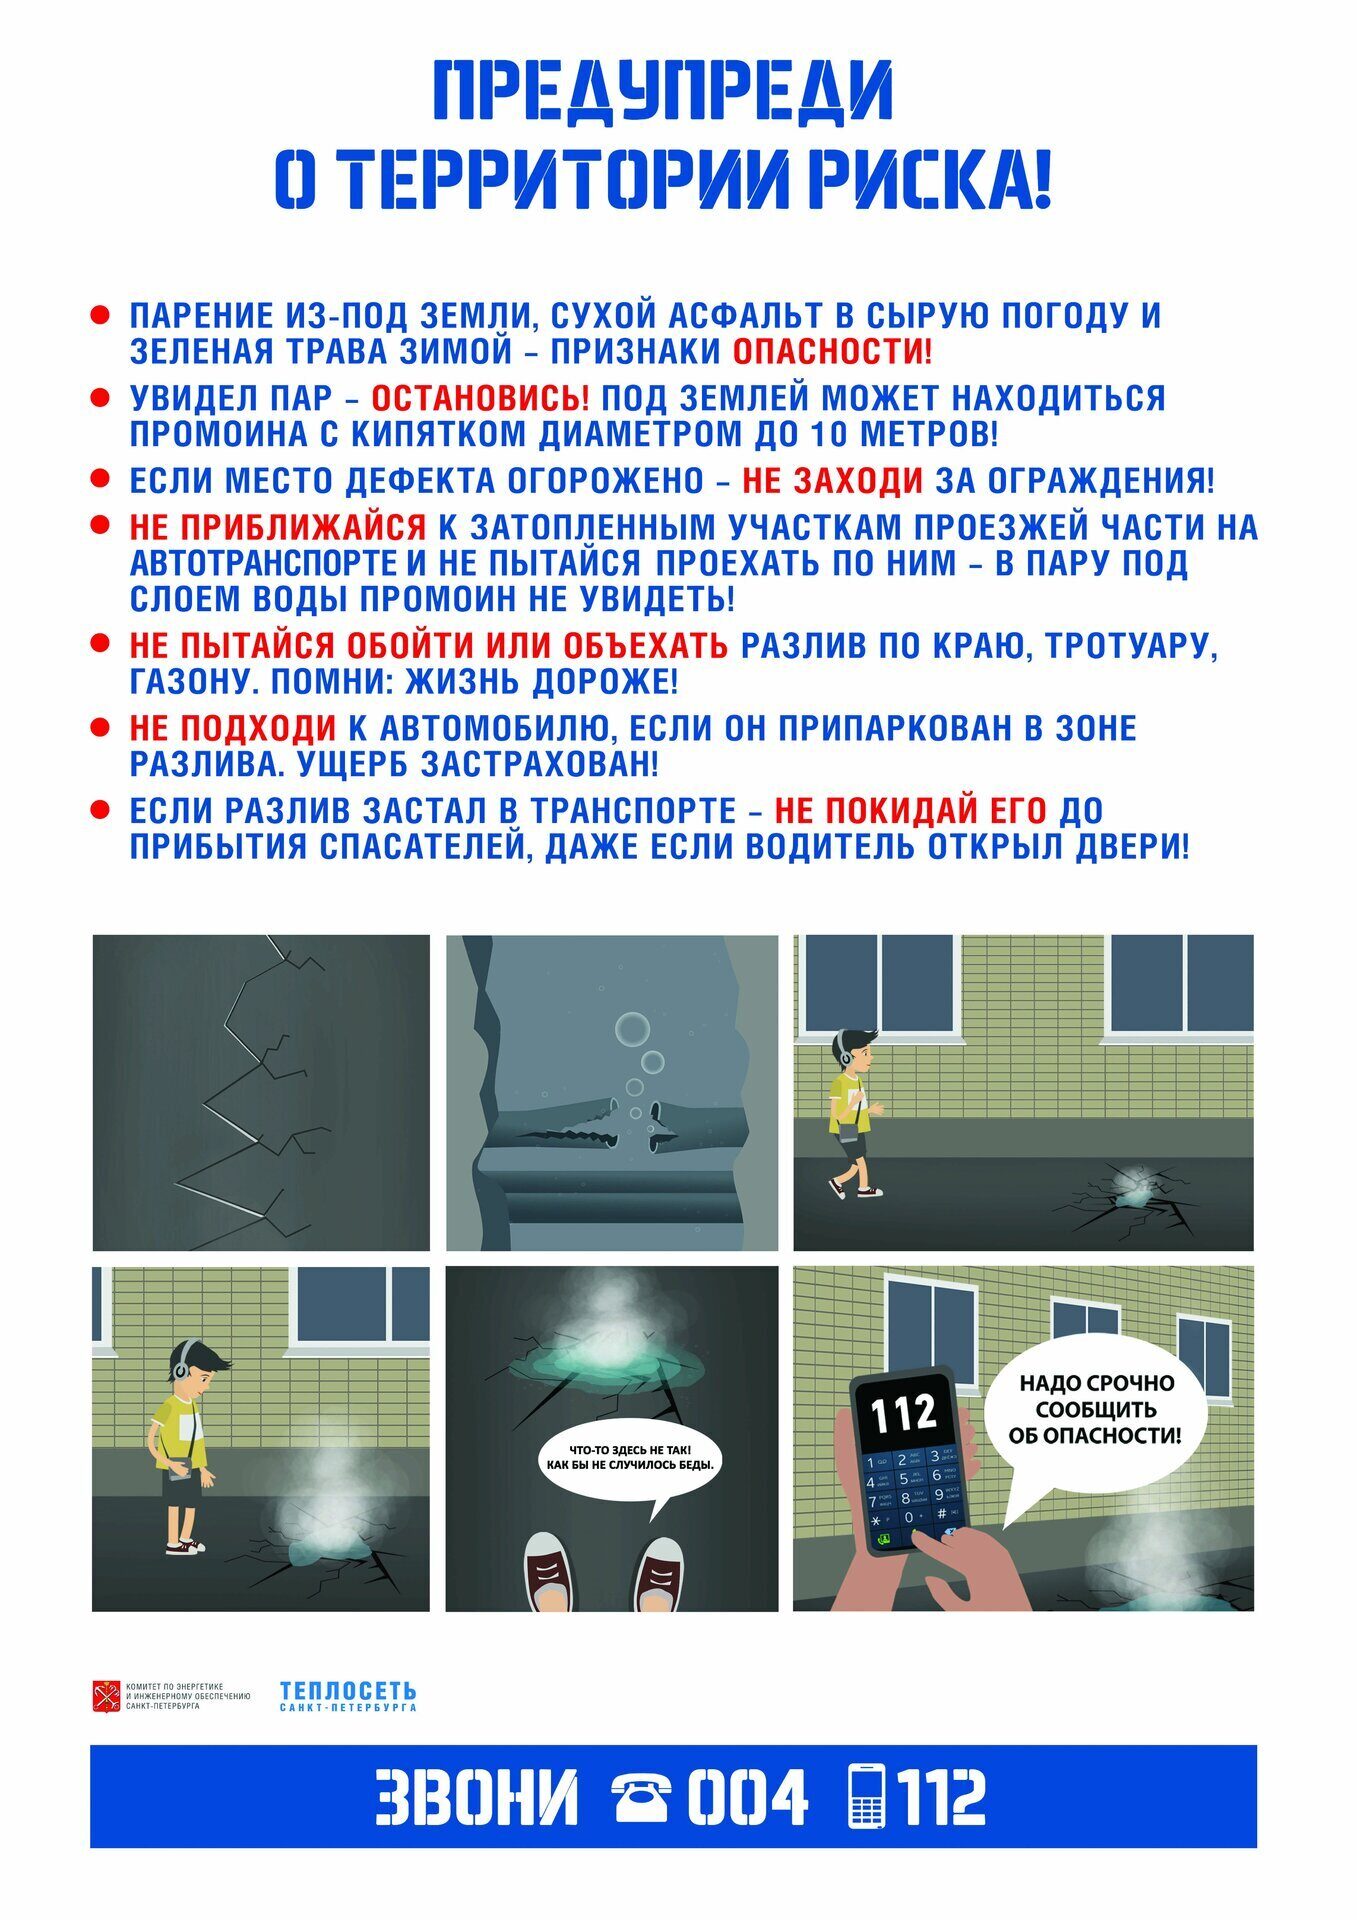 Плакат 2 предупреди о территории риска ТГК-1